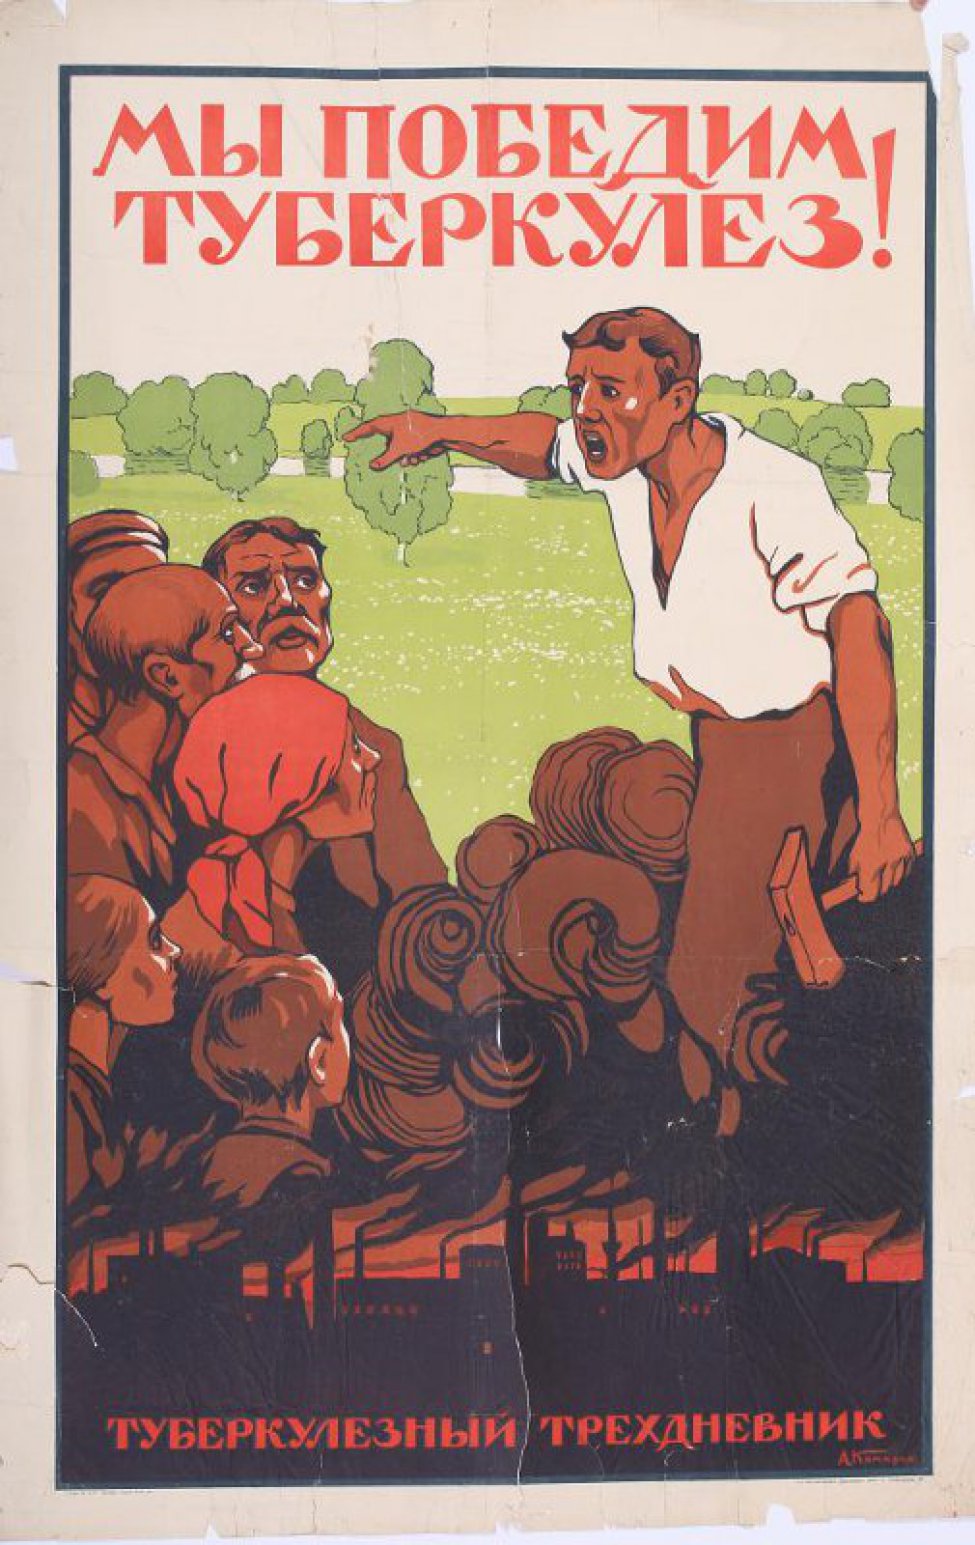 Изображен во весь рост молодой рабочий, беседующий с толпой.  В левой руке молот, правой показывает на зеленые луга и леса. Внизу дымящиеся трубы фабрик,ниже надпись:"Туберкулезный трехдневник".